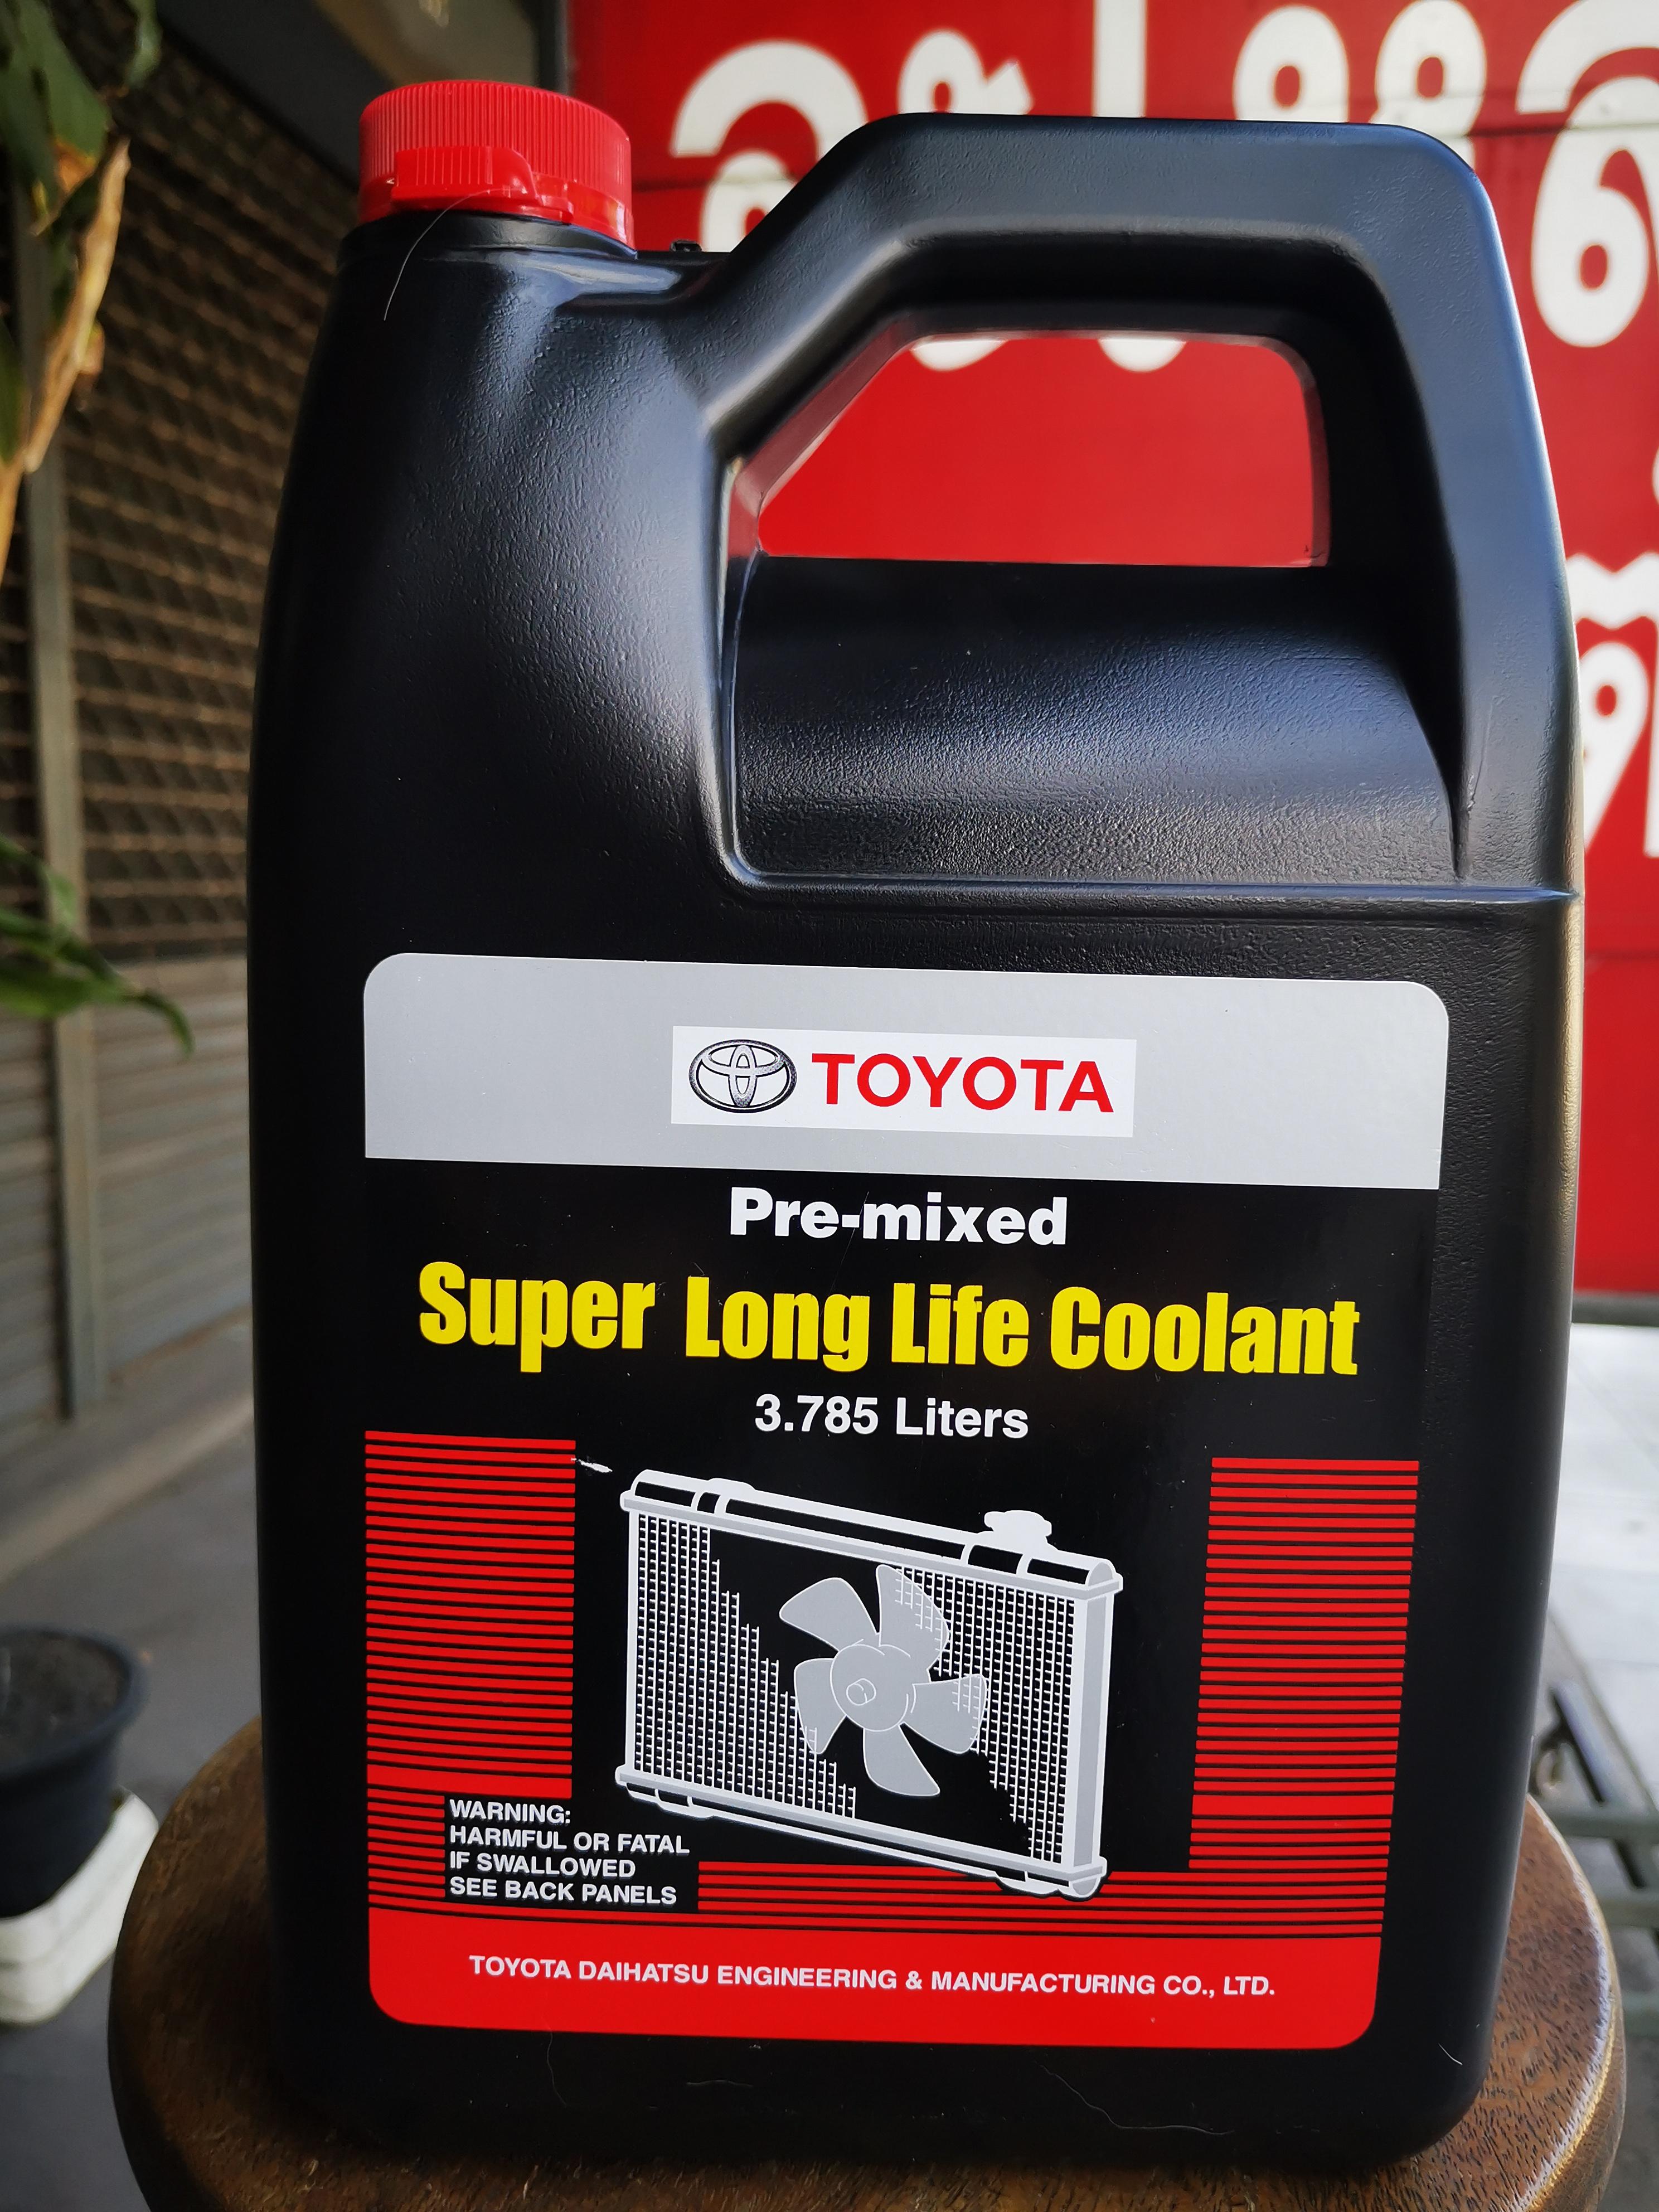 TOYOTA น้ำยาหม้อน้ำ สำหรับรถ Toyota ทุกรุ่น ขนาด 3.785 ลิตร น้ำยาหม้อน้ำ น้ำยาหล่อเย็น แท้ศูนย์ สีชมพู สำหรับรถ Toyota เก๋ง กระบะ ทุกชนิด ( น้ำยากันสนิมหม้อน้ำ , น้ำยาหล่อเย็น , น้ำยาเติมหม้อน้ำ Pre-mixed Super Long Life Coolant )